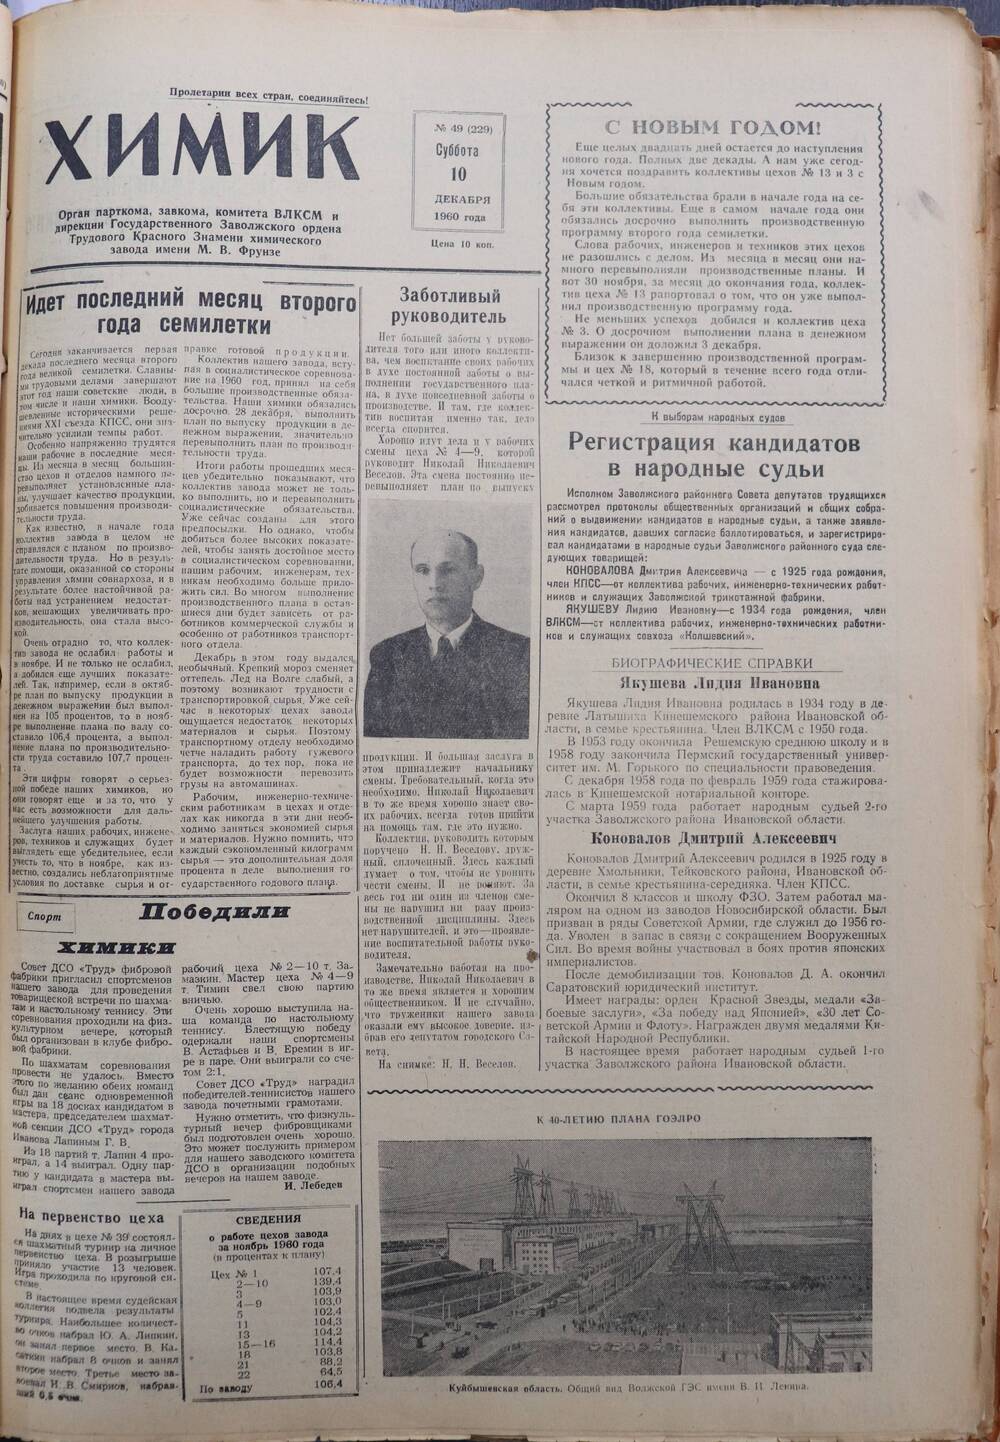 Газета «Химик» № 49 от 10 декабря 1960 года.